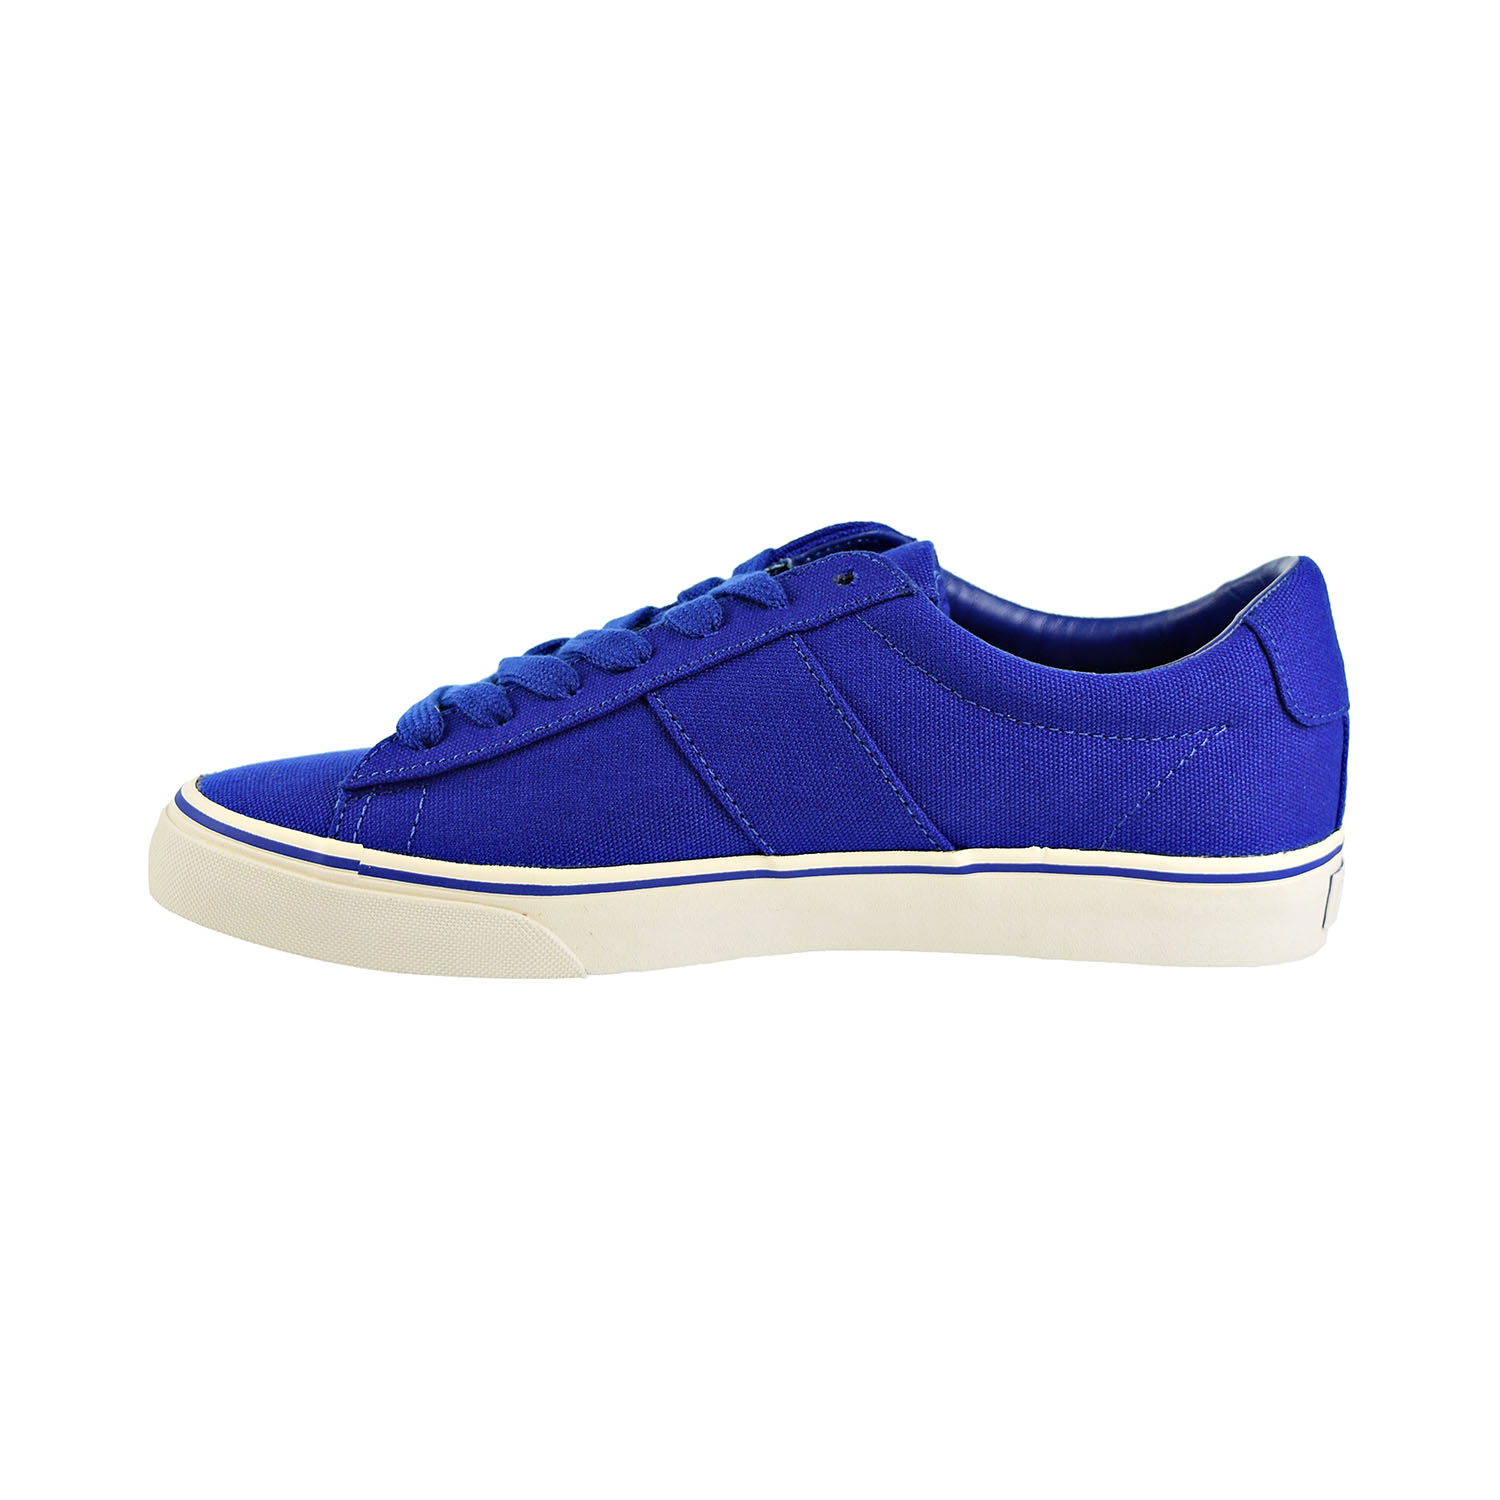 Polo Ralph Lauren Sayer Men's Shoes Blue 816710017-003 - image 4 of 6